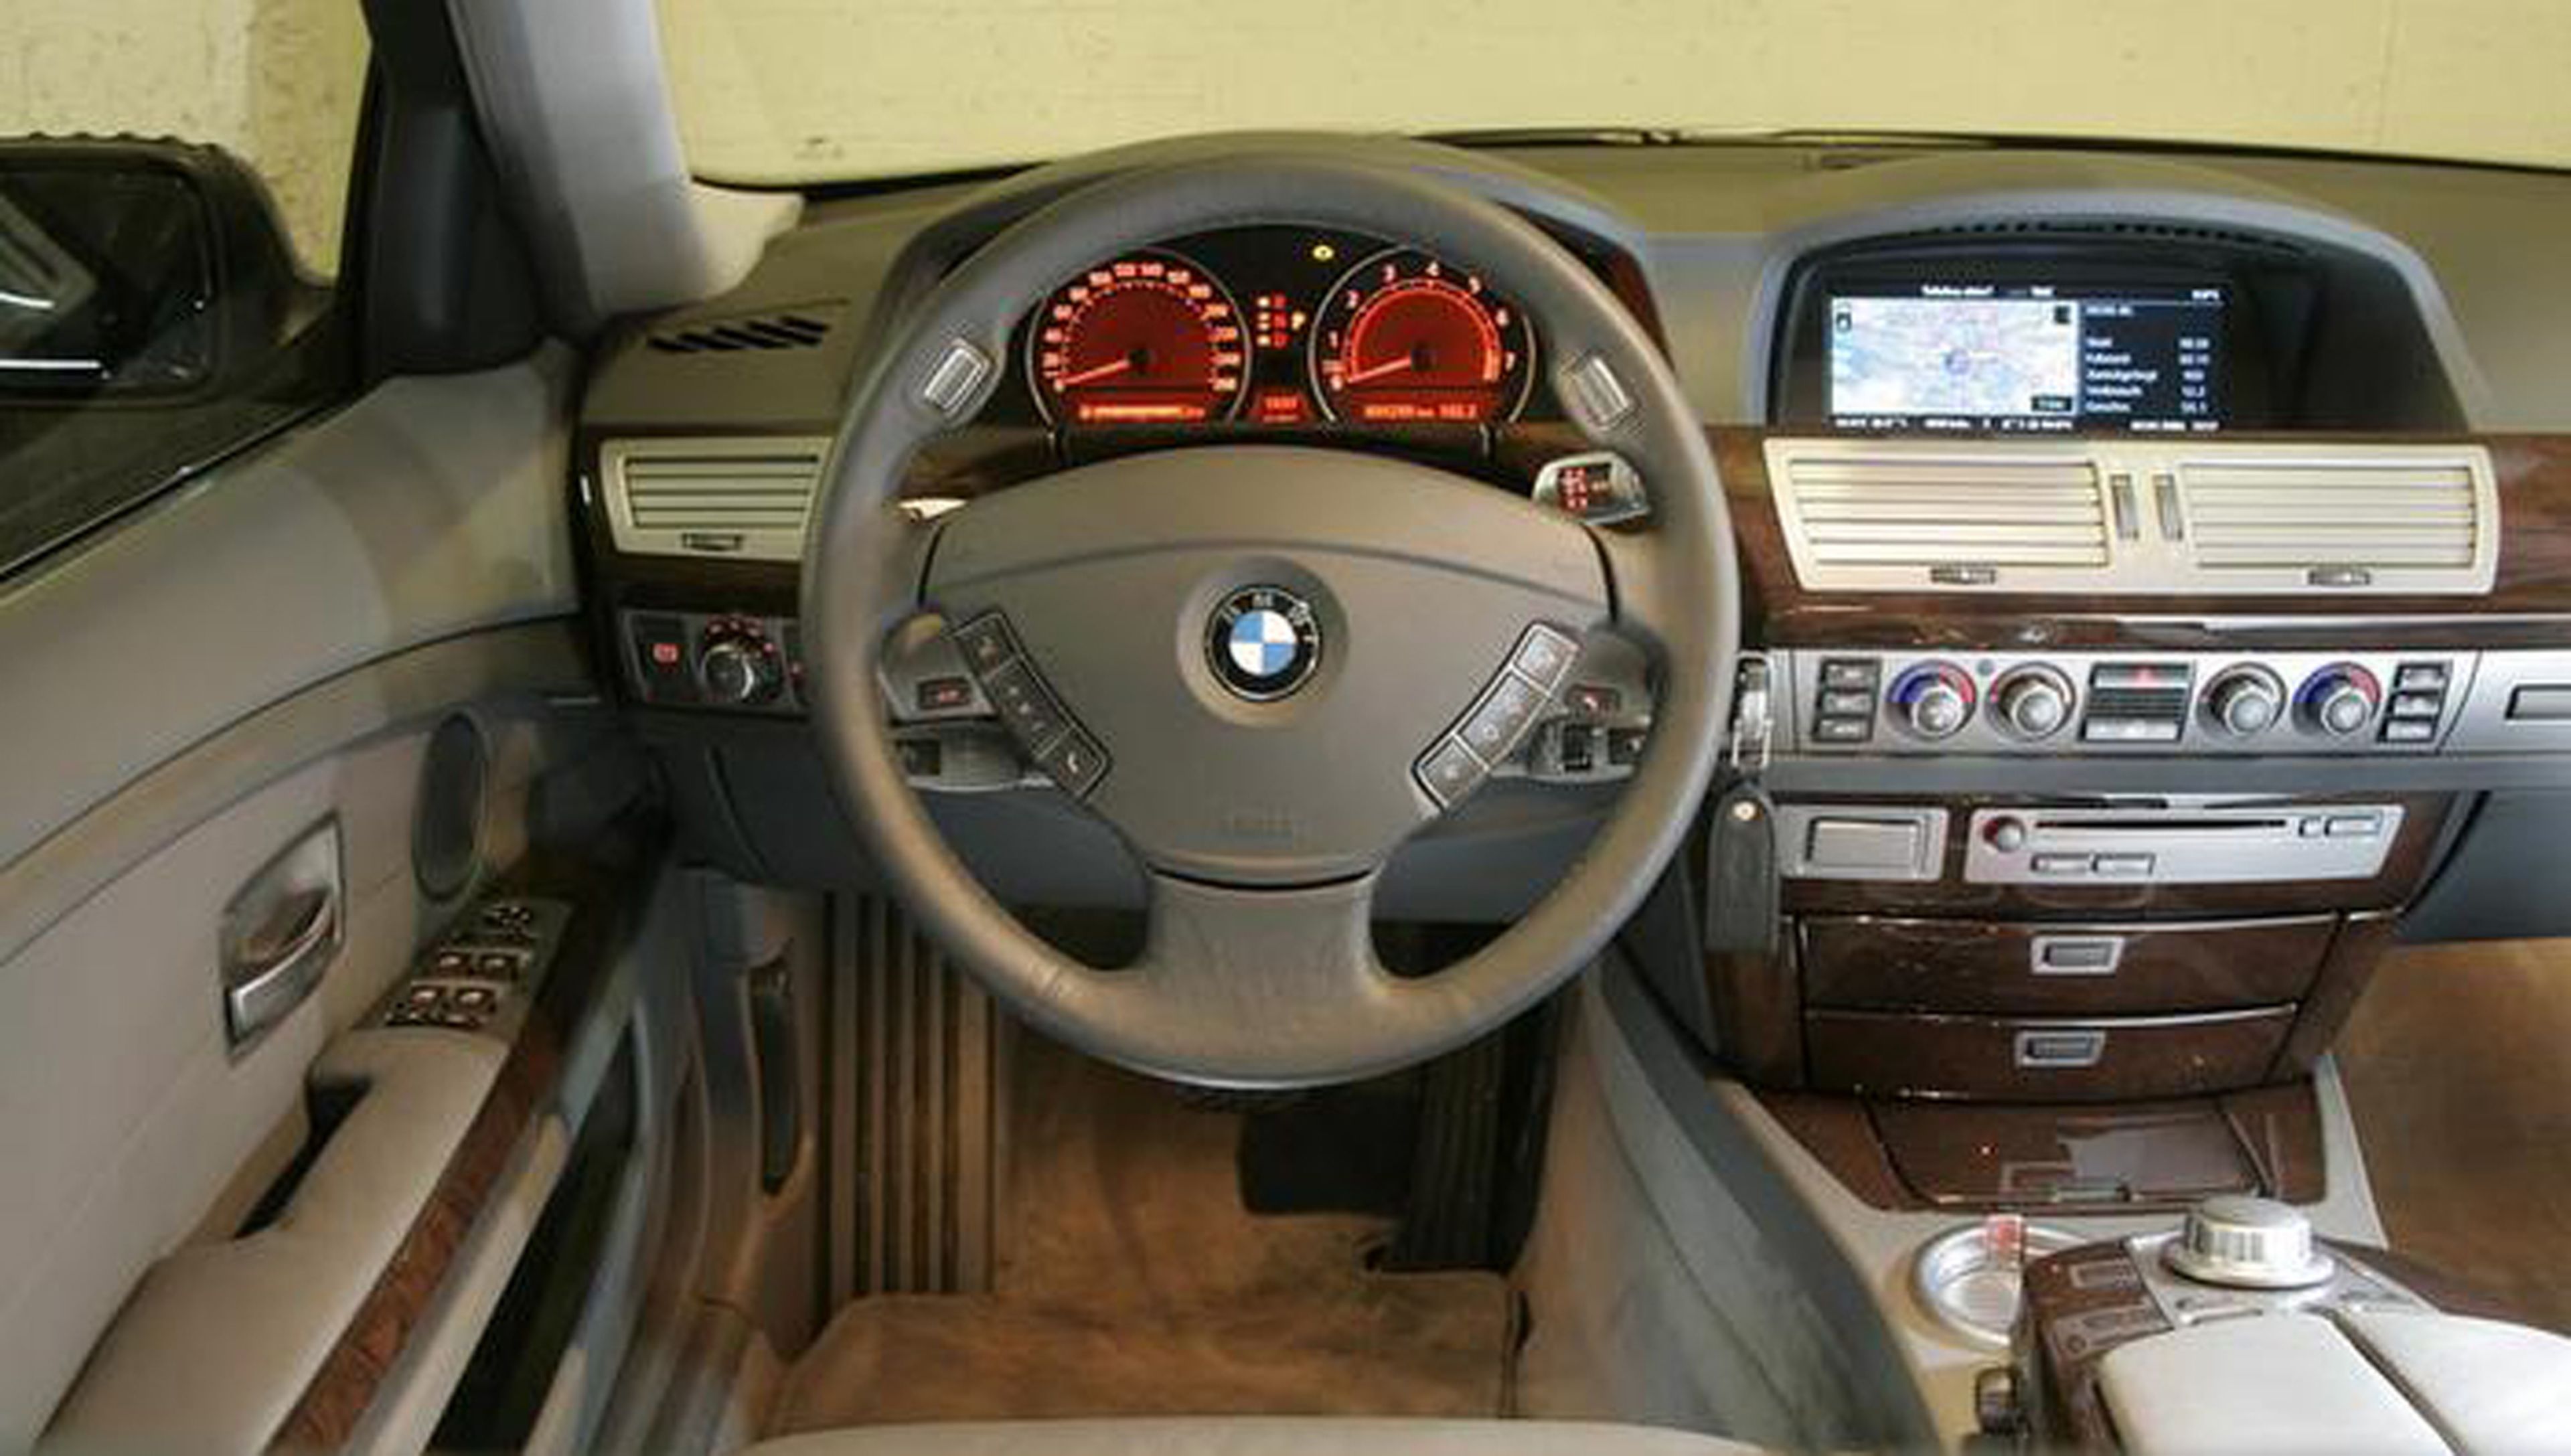 Esta es la verdadera razon por la BMW usa el color naranja en sus cuadros de mandos